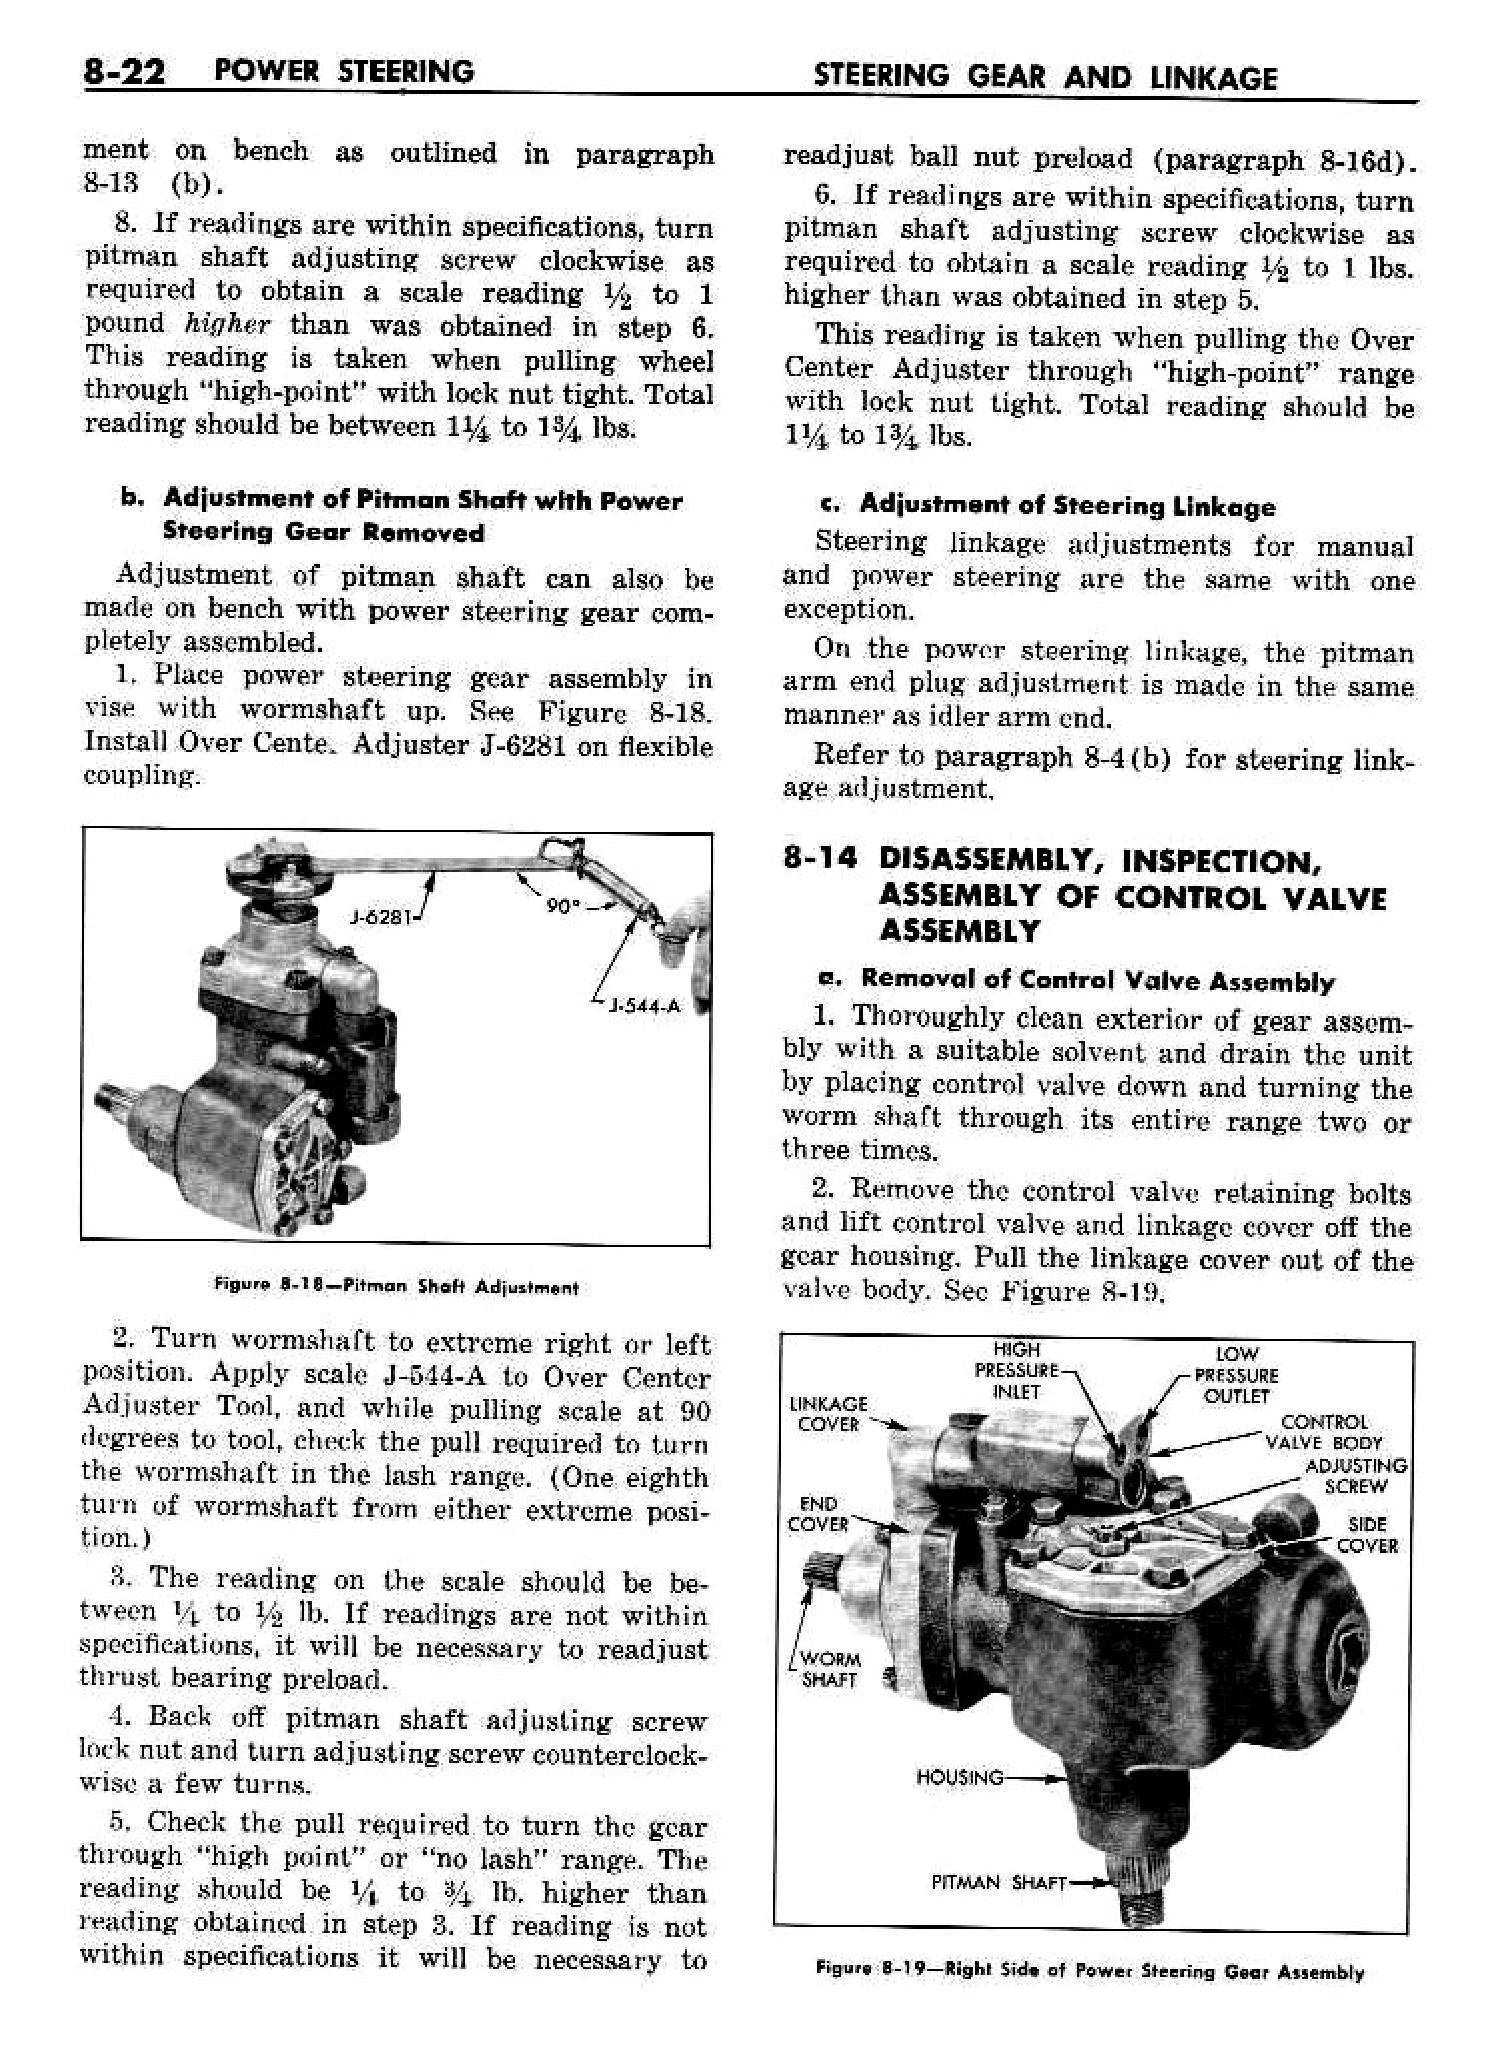 n_09 1958 Buick Shop Manual - Steering_22.jpg